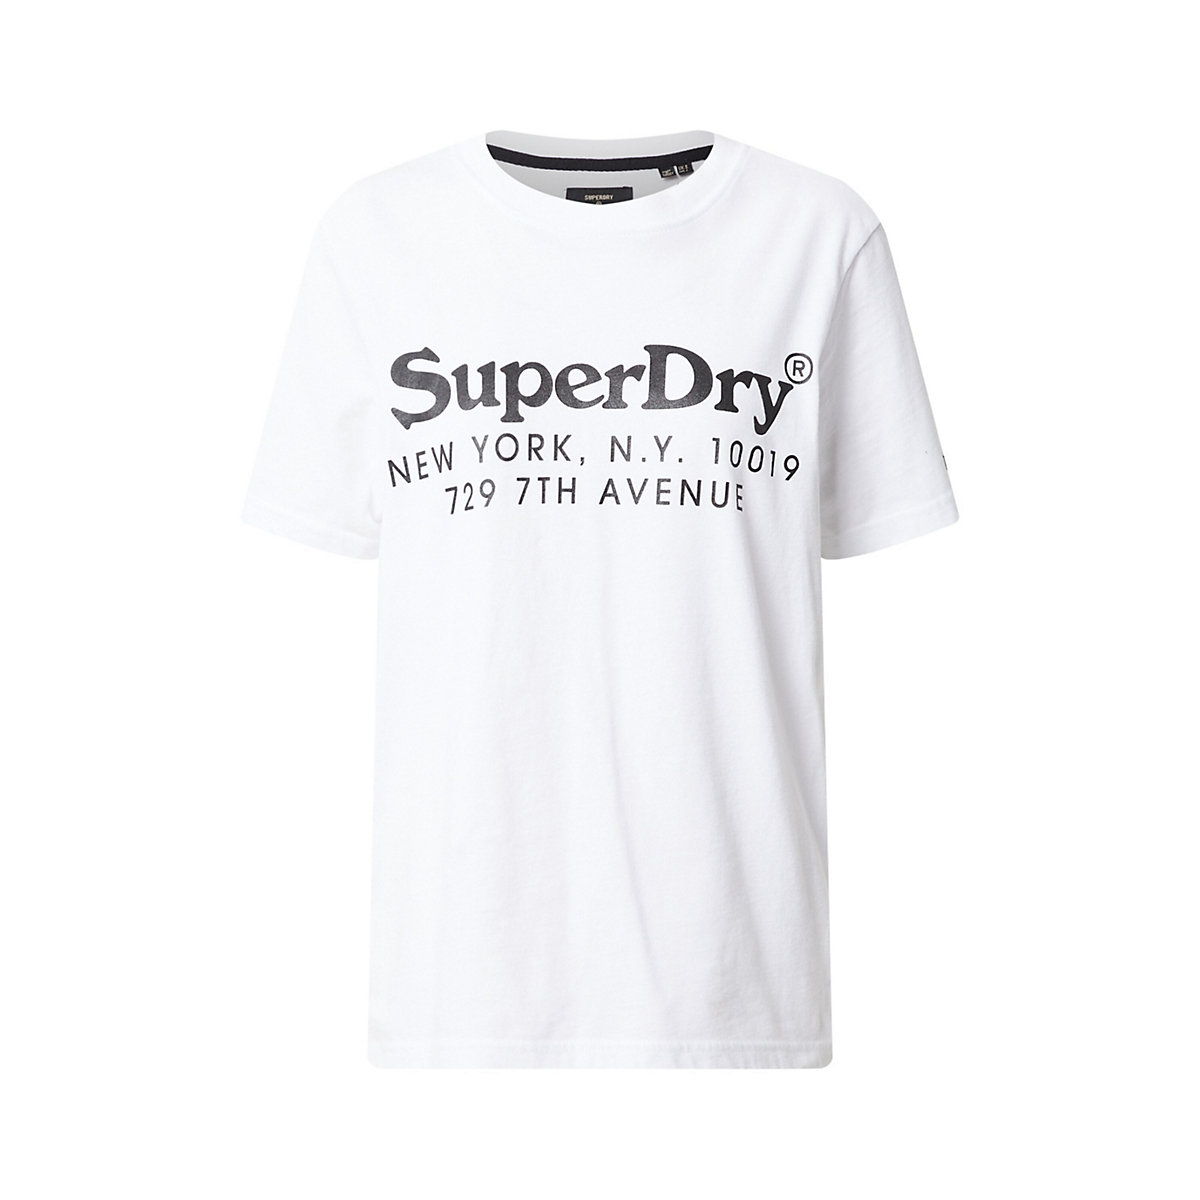 Superdry Shirt schwarz/weiß OY5749